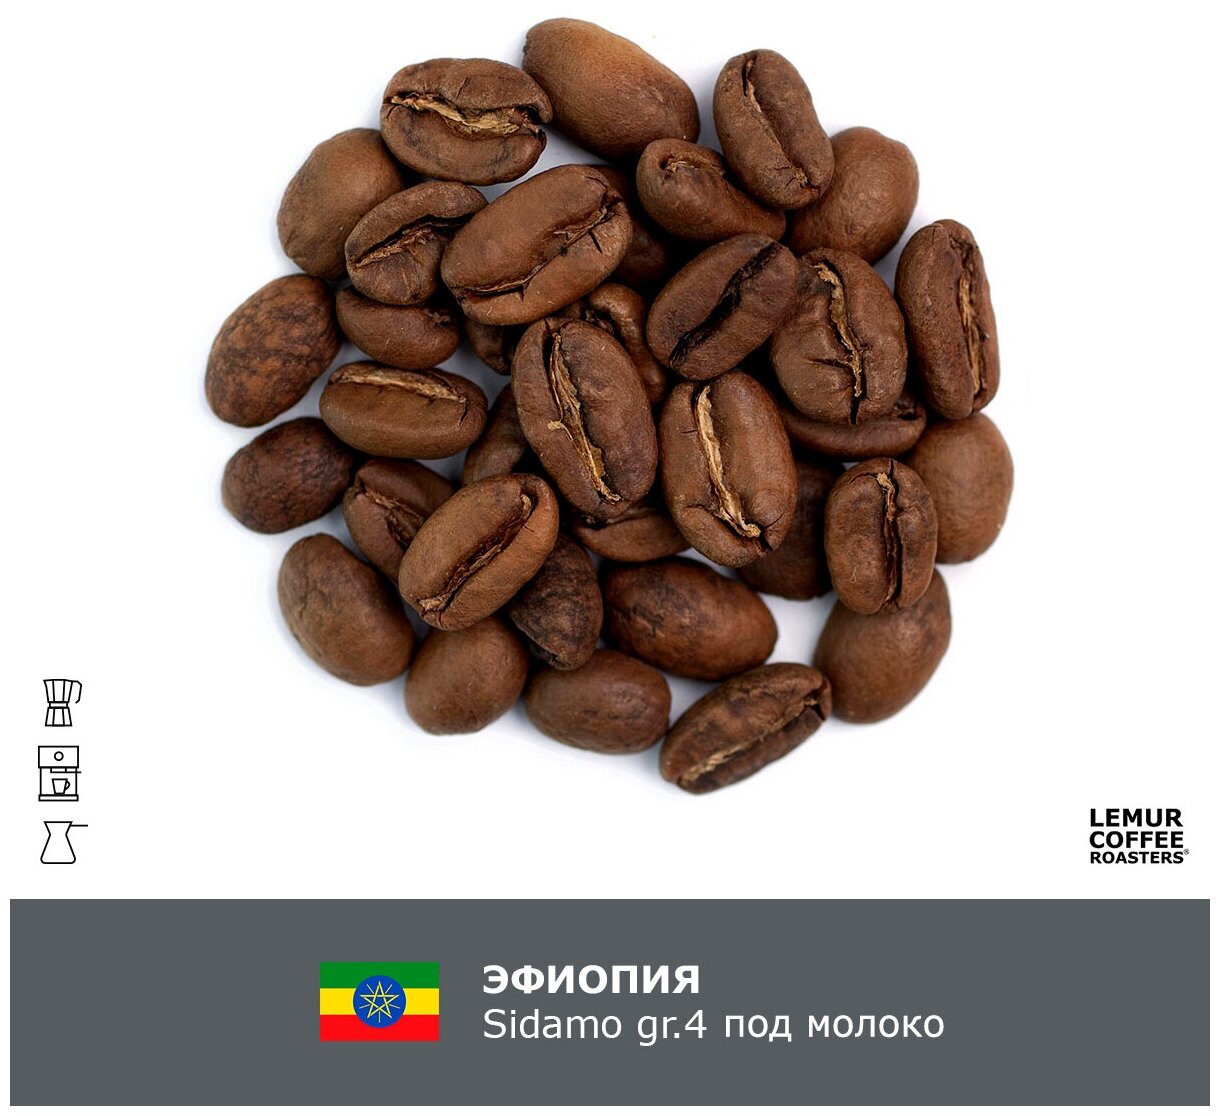 Свежеобжаренный кофе в зернах Эфиопия Sidamo gr.4 под молоко Lemur Coffee Roasters, 1кг